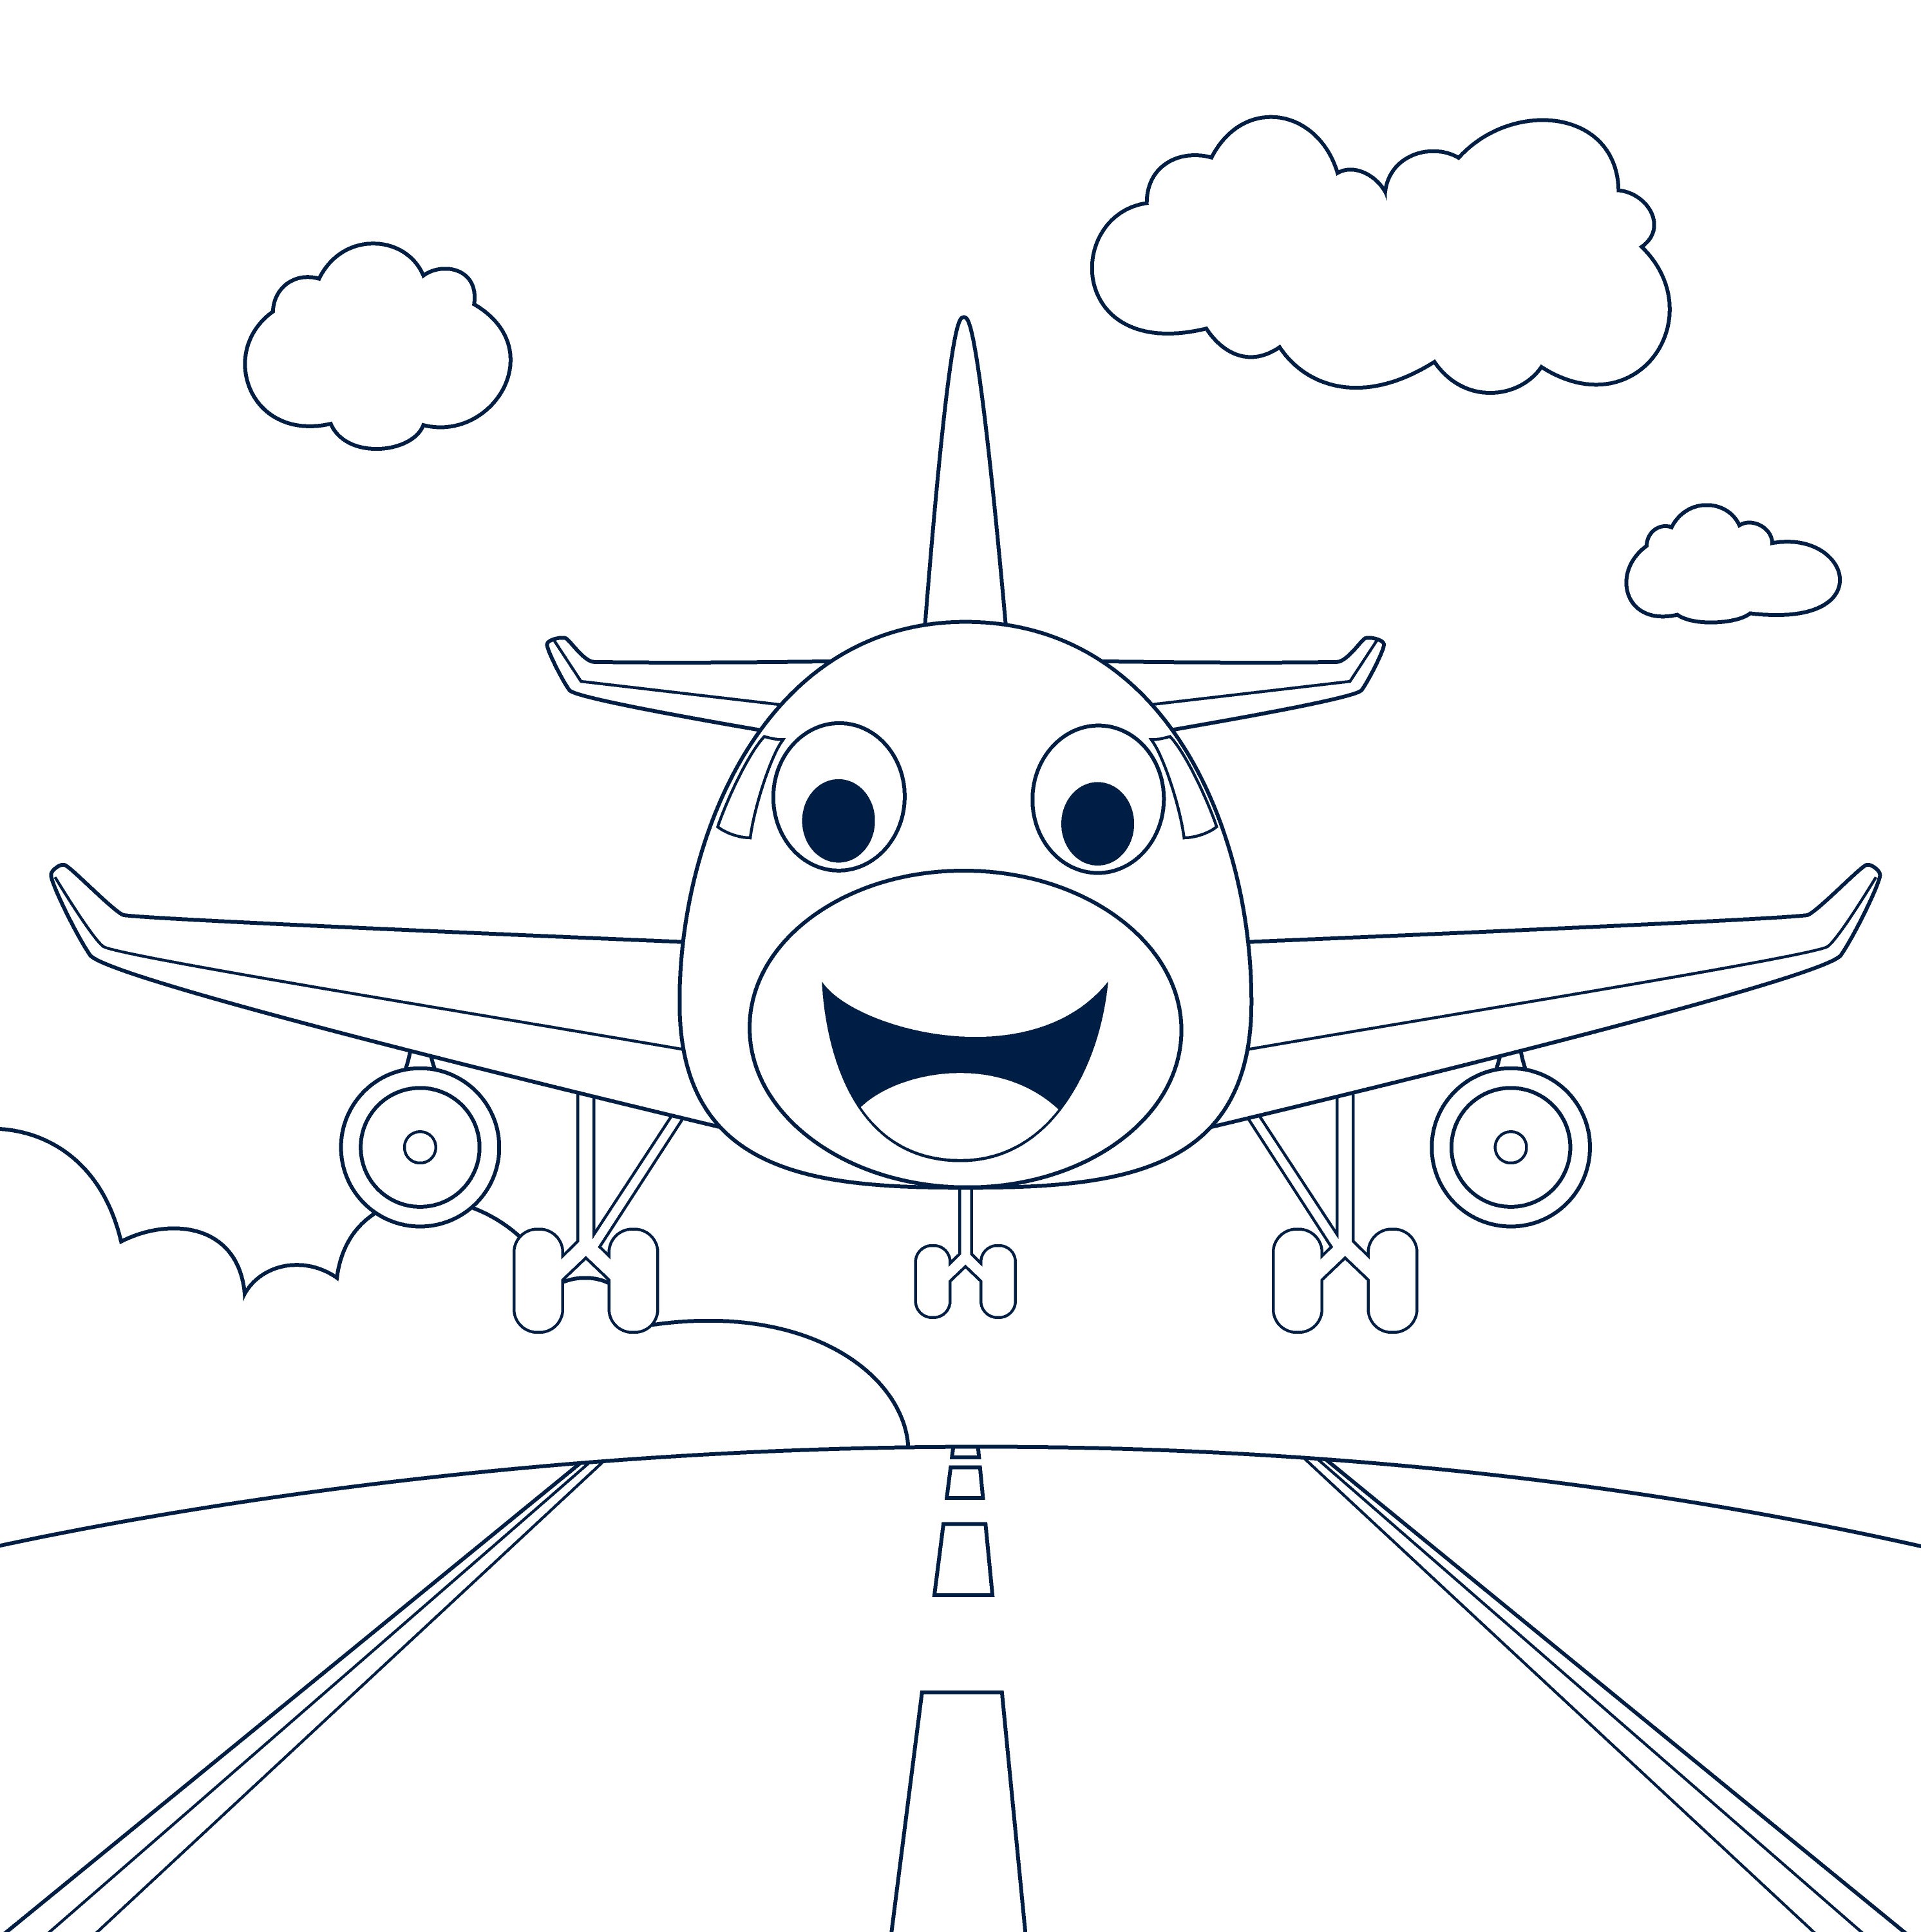 Раскраска самолет с лицом на взлетной полосе формата А4 в высоком качестве